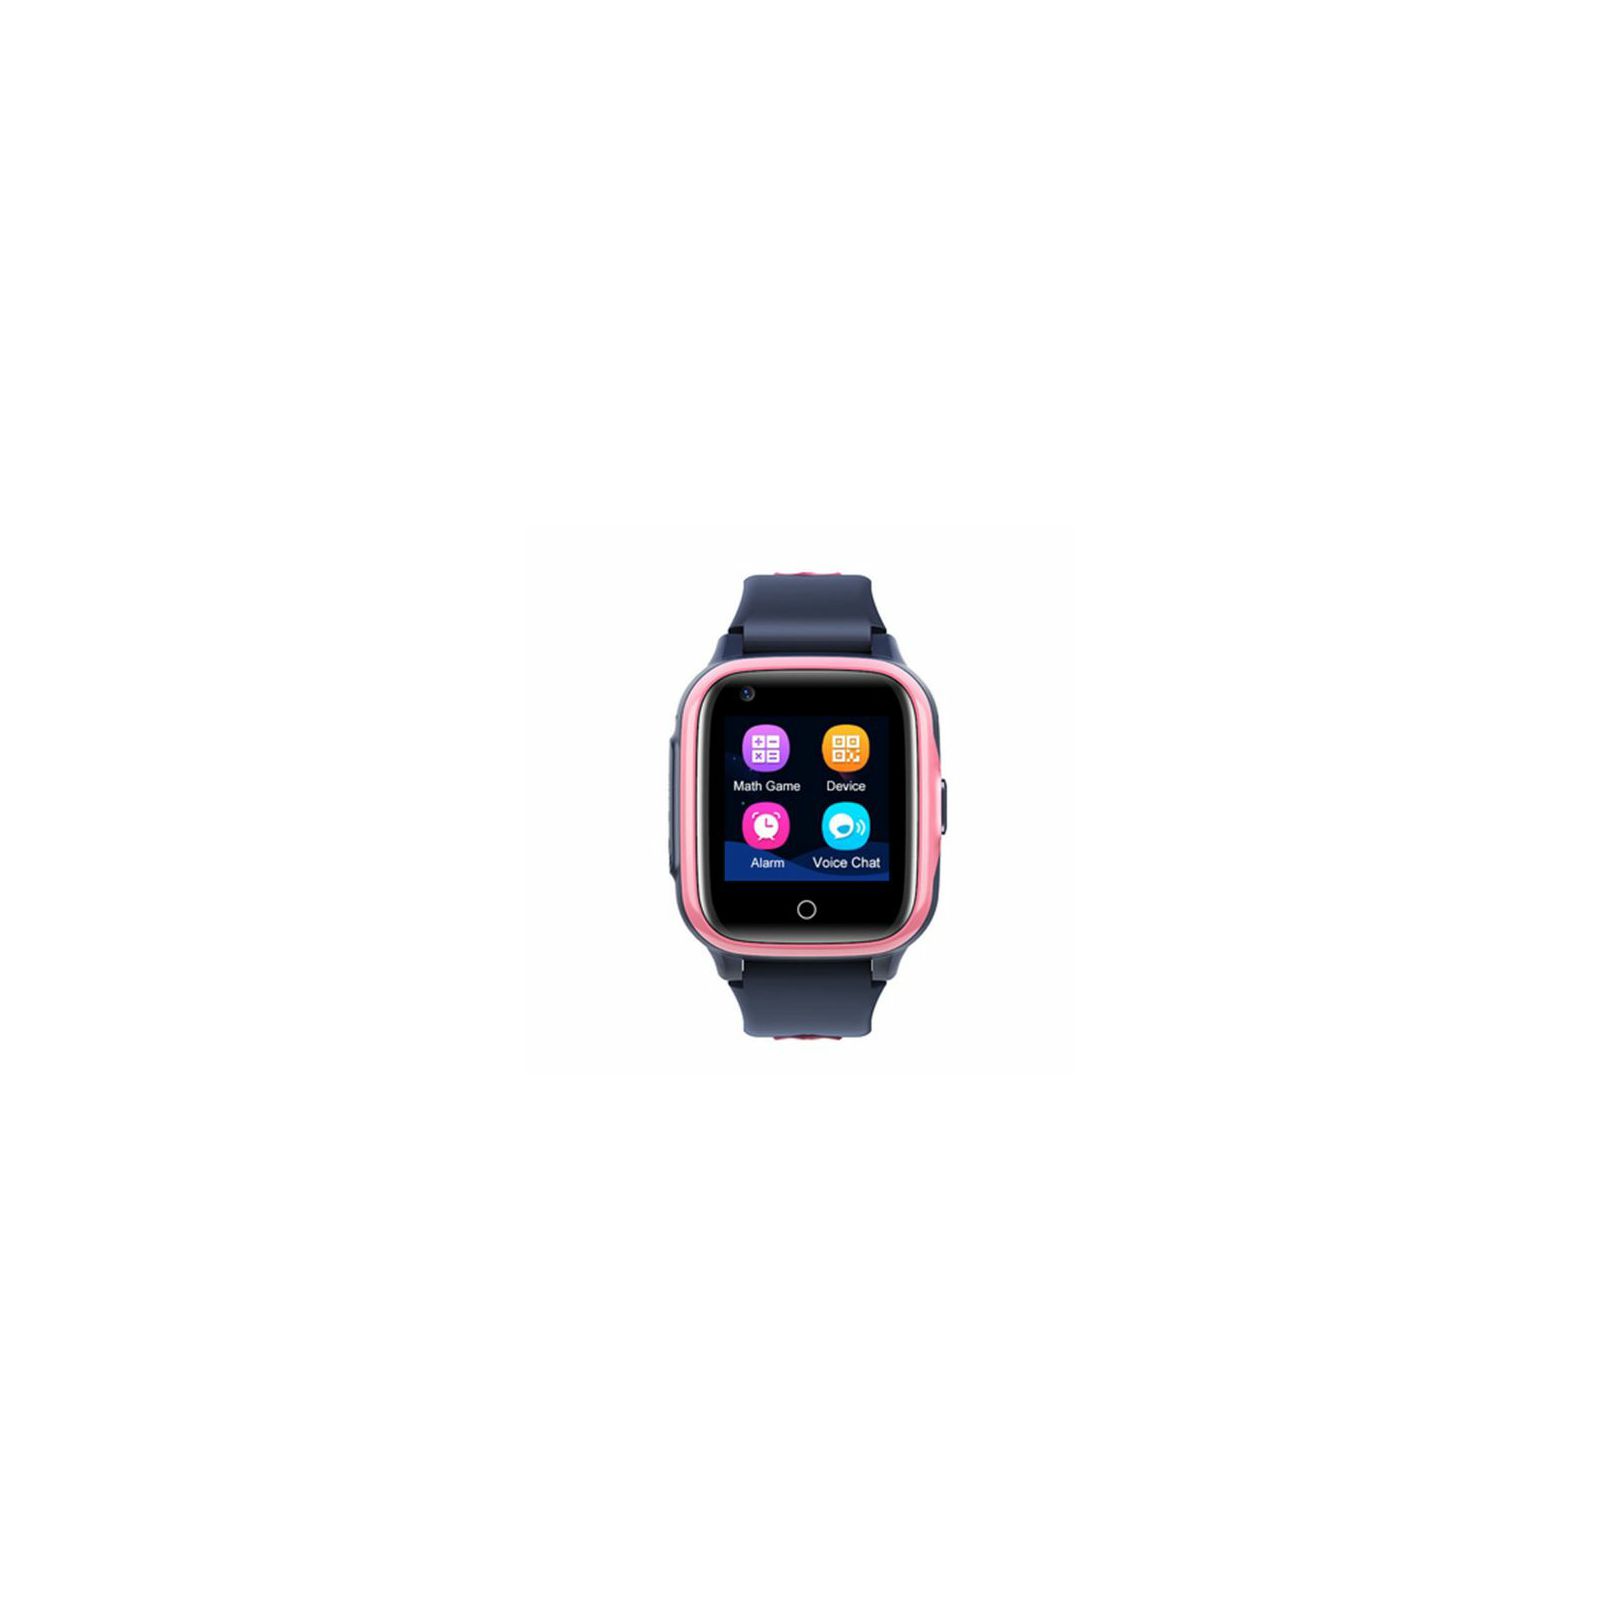 moye-bambino-4g-smart-watch-black-pink-8605042605651_45207.jpg